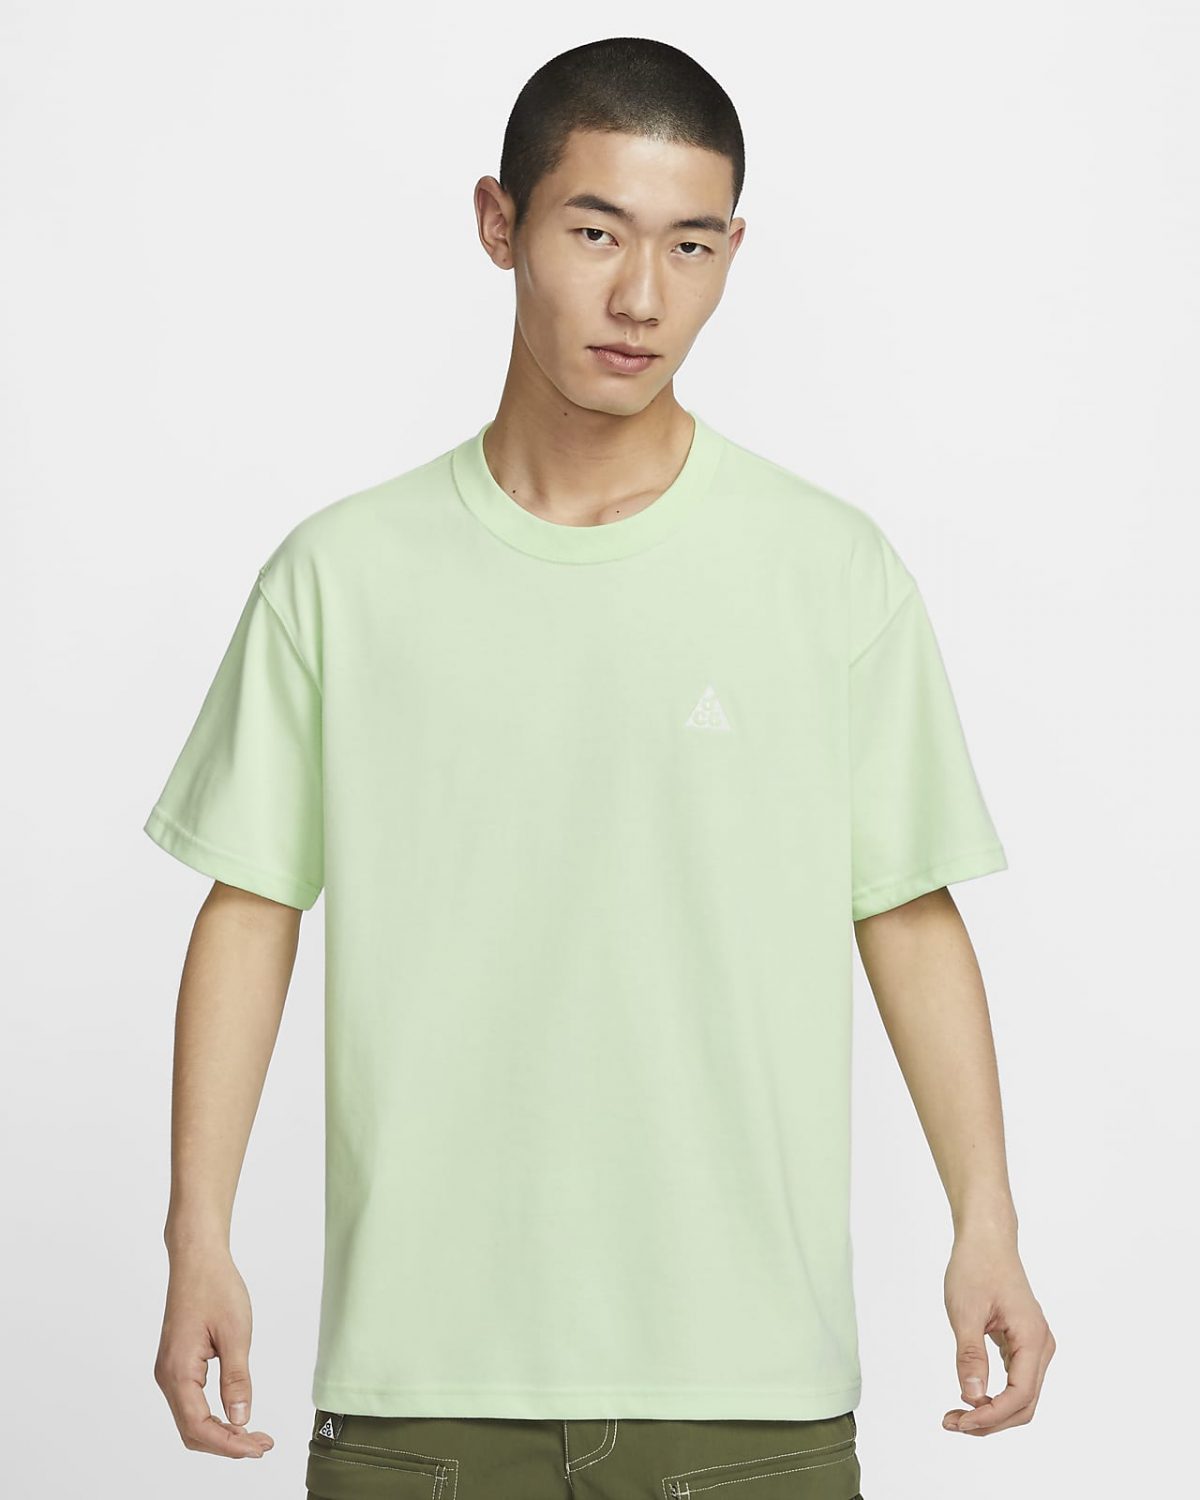 Мужская футболка Nike ACG зеленая фото